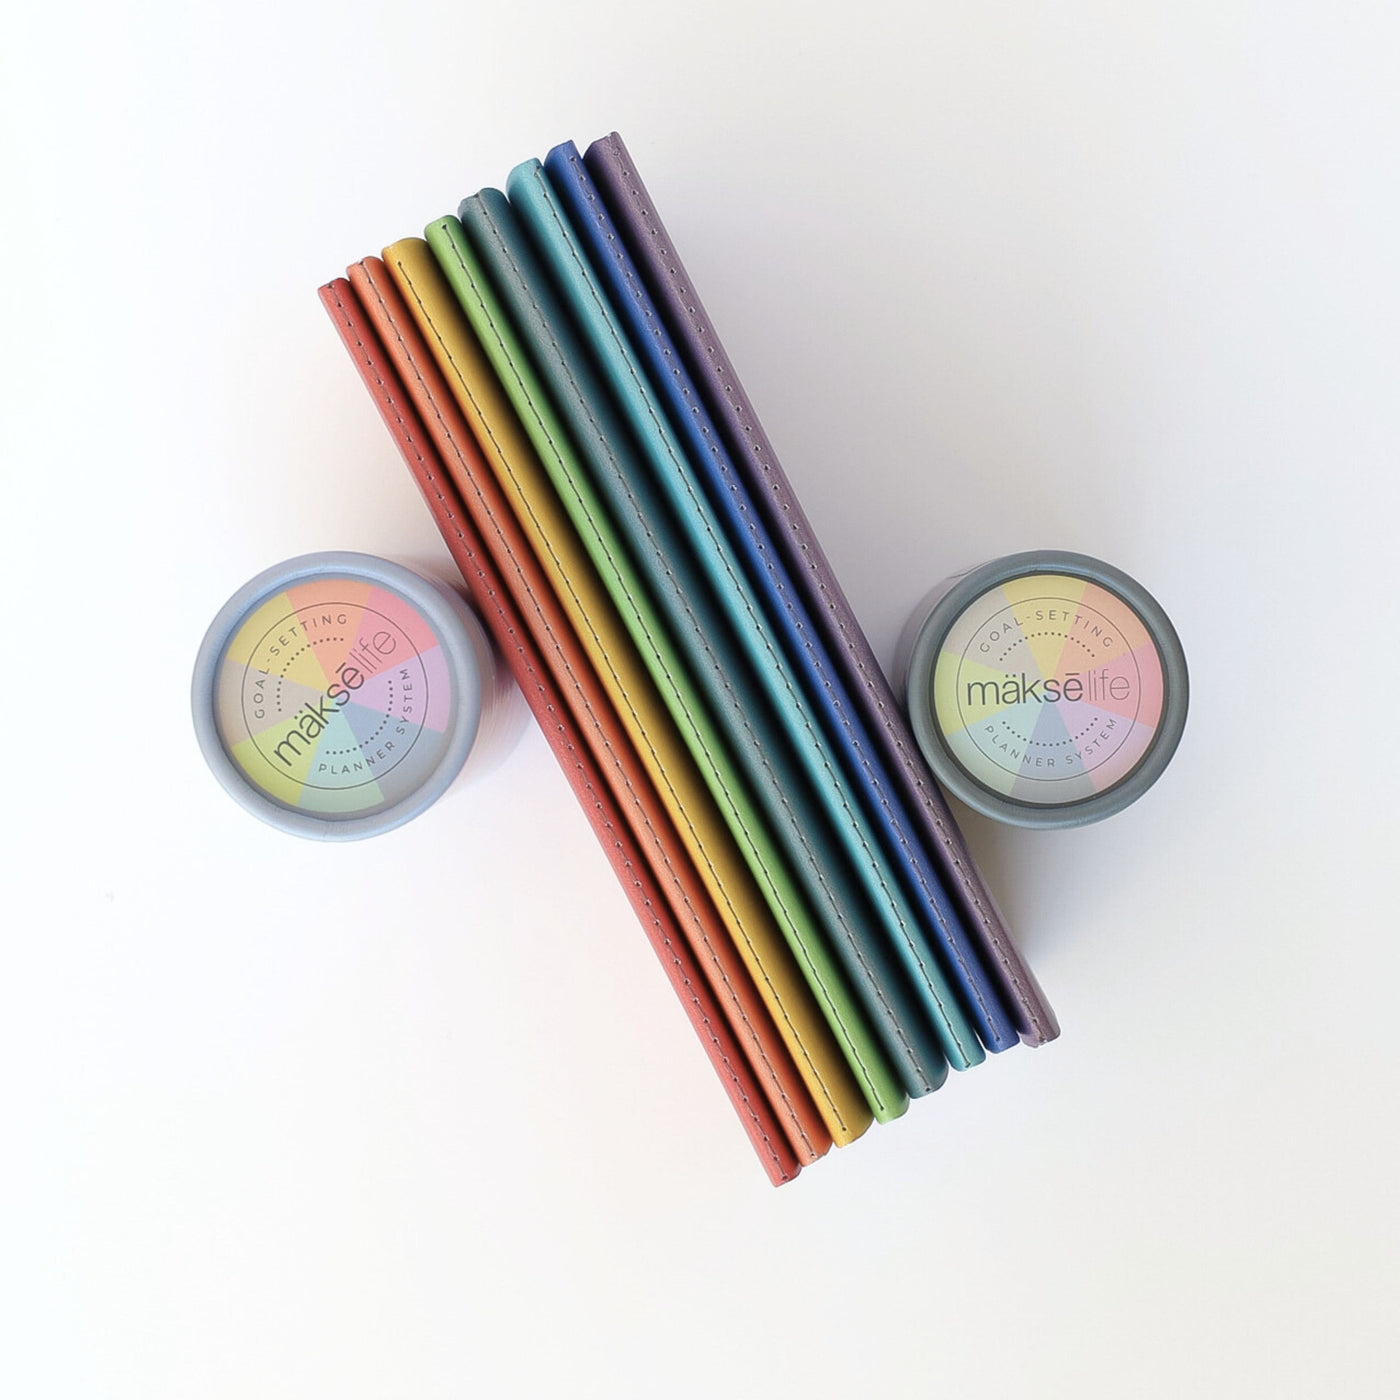 A5 Rainbow Notebook Set